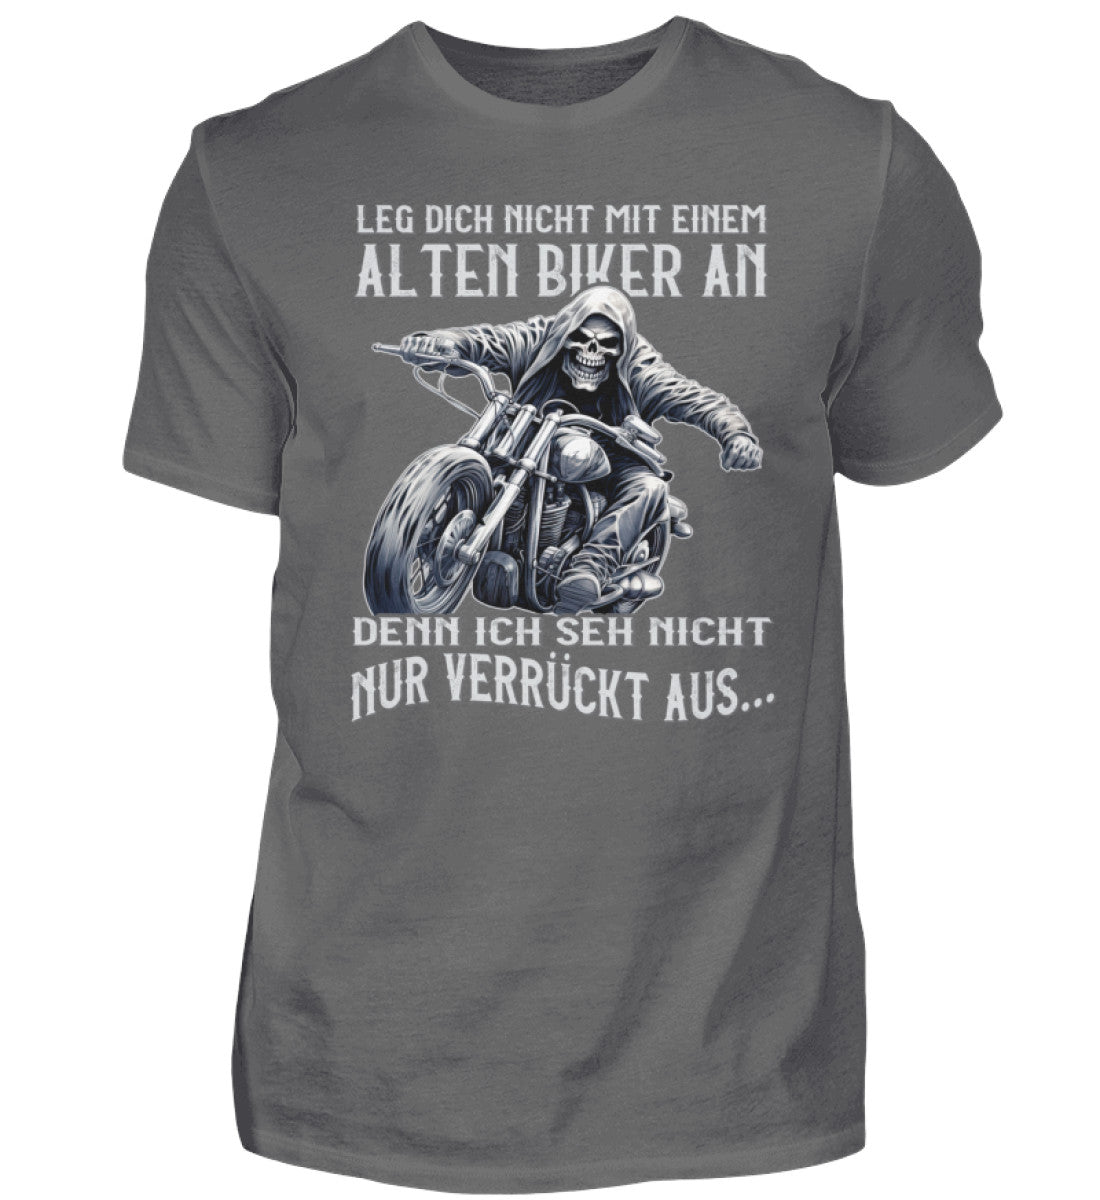 Ein Biker T-Shirt für Motorradfahrer von Wingbikers mit dem Aufdruck, Leg dich nicht mit einem alten Biker an, denn ich seh nicht nur verrückt aus - in grau.